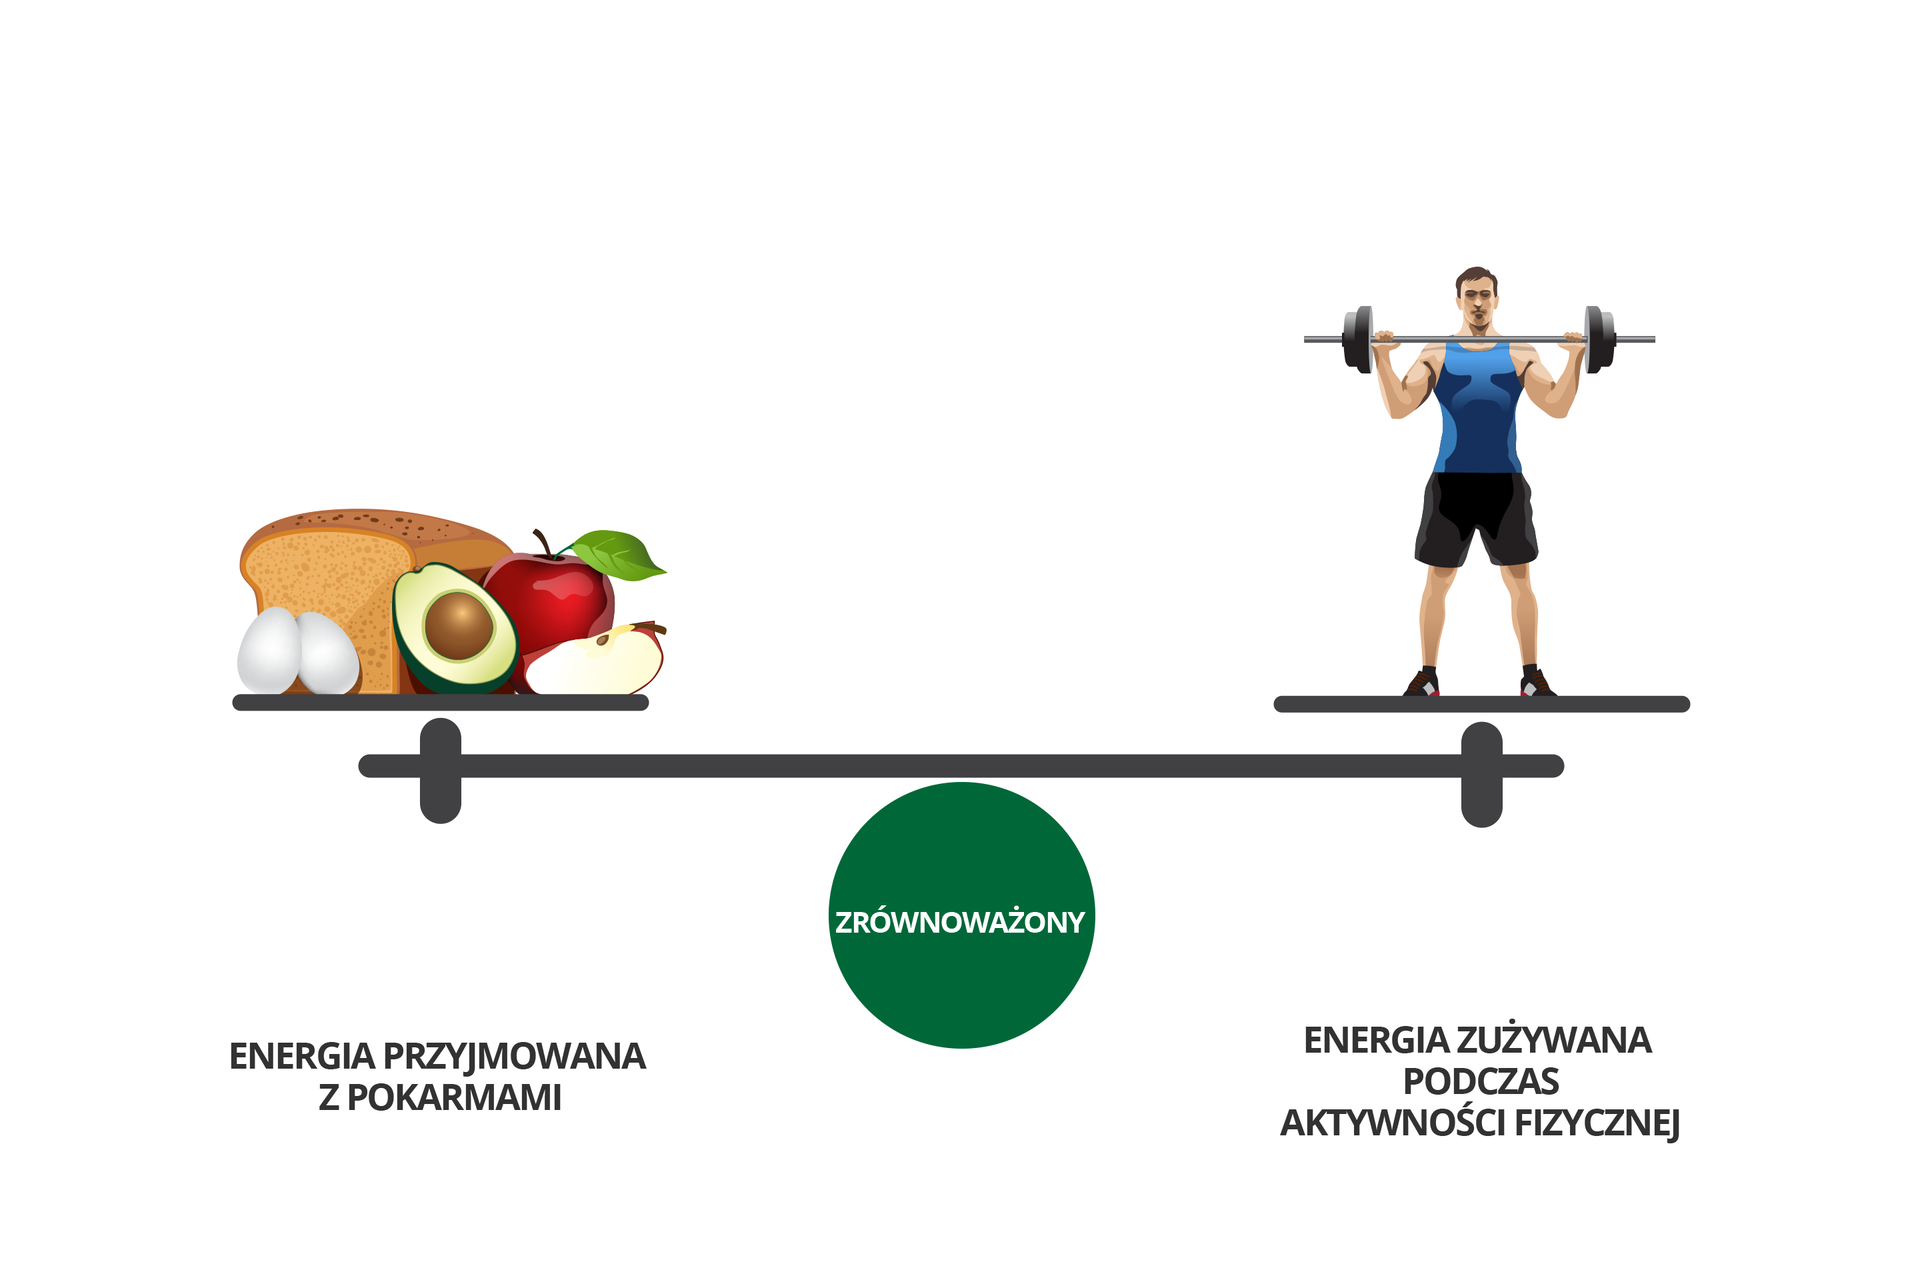 W galerii znajdują się plansze, dotyczące bilansowania energii. Rysunek przedstawia poziomo belkę wagi na zielonym kole z napisem: zrównoważony. Z lewej na szali produkty spożywcze: chleb, 2 jajka, kiwi, jabłka. Podpis: energia przyjmowana z pokarmami. Z prawej postać atlety ze sztangą. Podpis: energia zużywana podczas aktywności fizycznej.